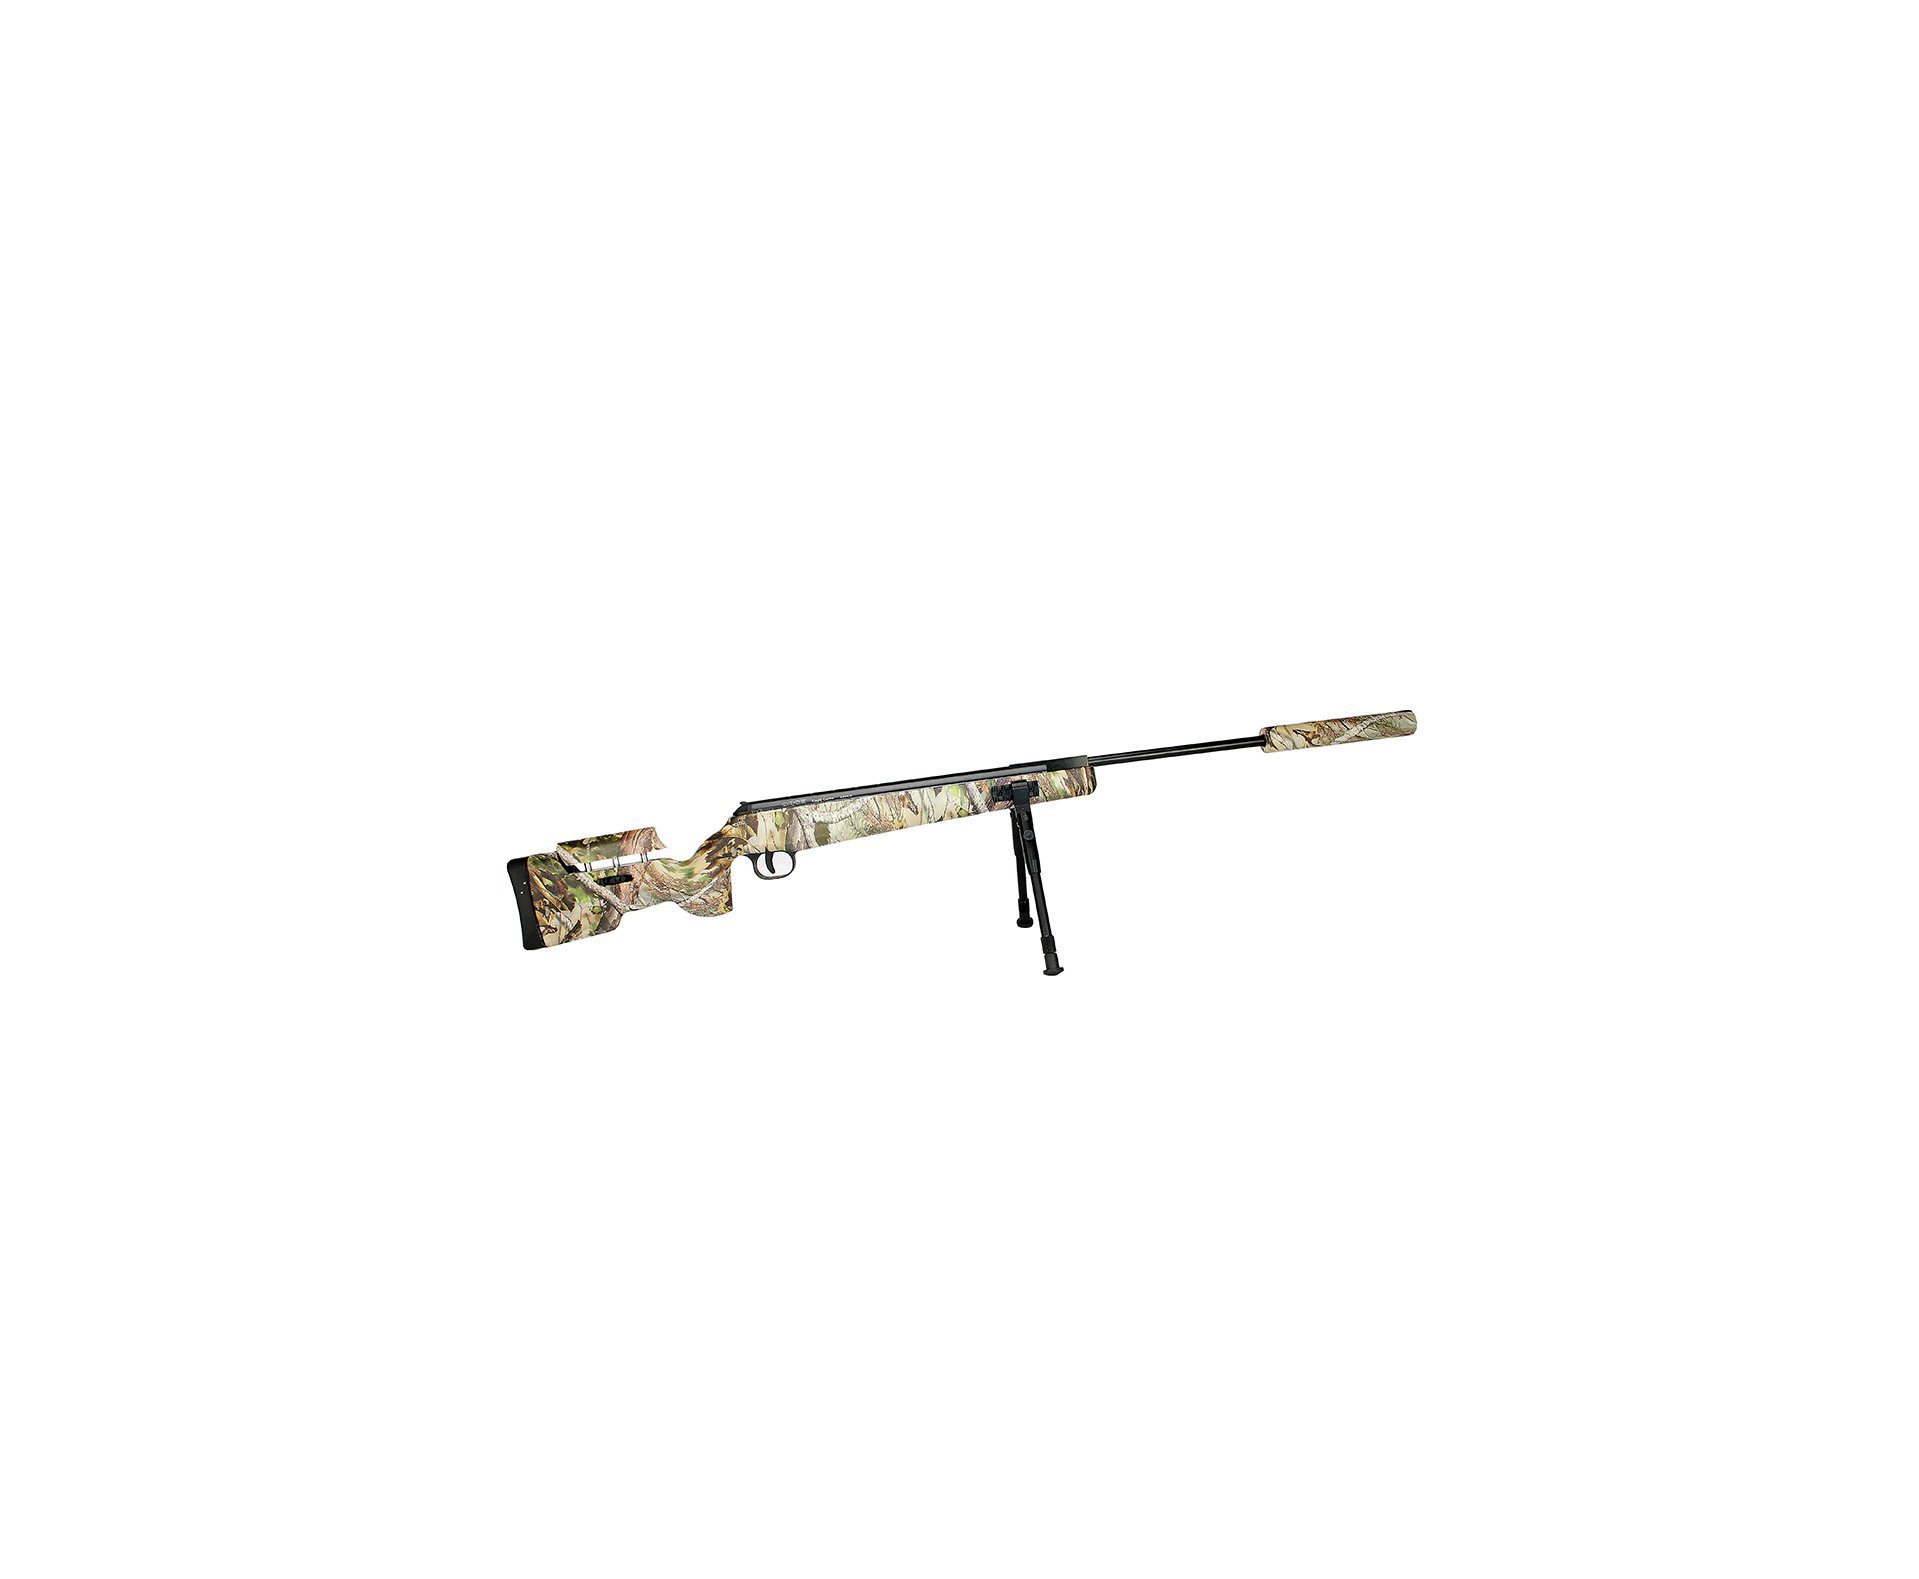 Carabina De Pressão Eagle Camo 1250 Sniper Gas Ram 70kg 4.5mm Qgk By Spa